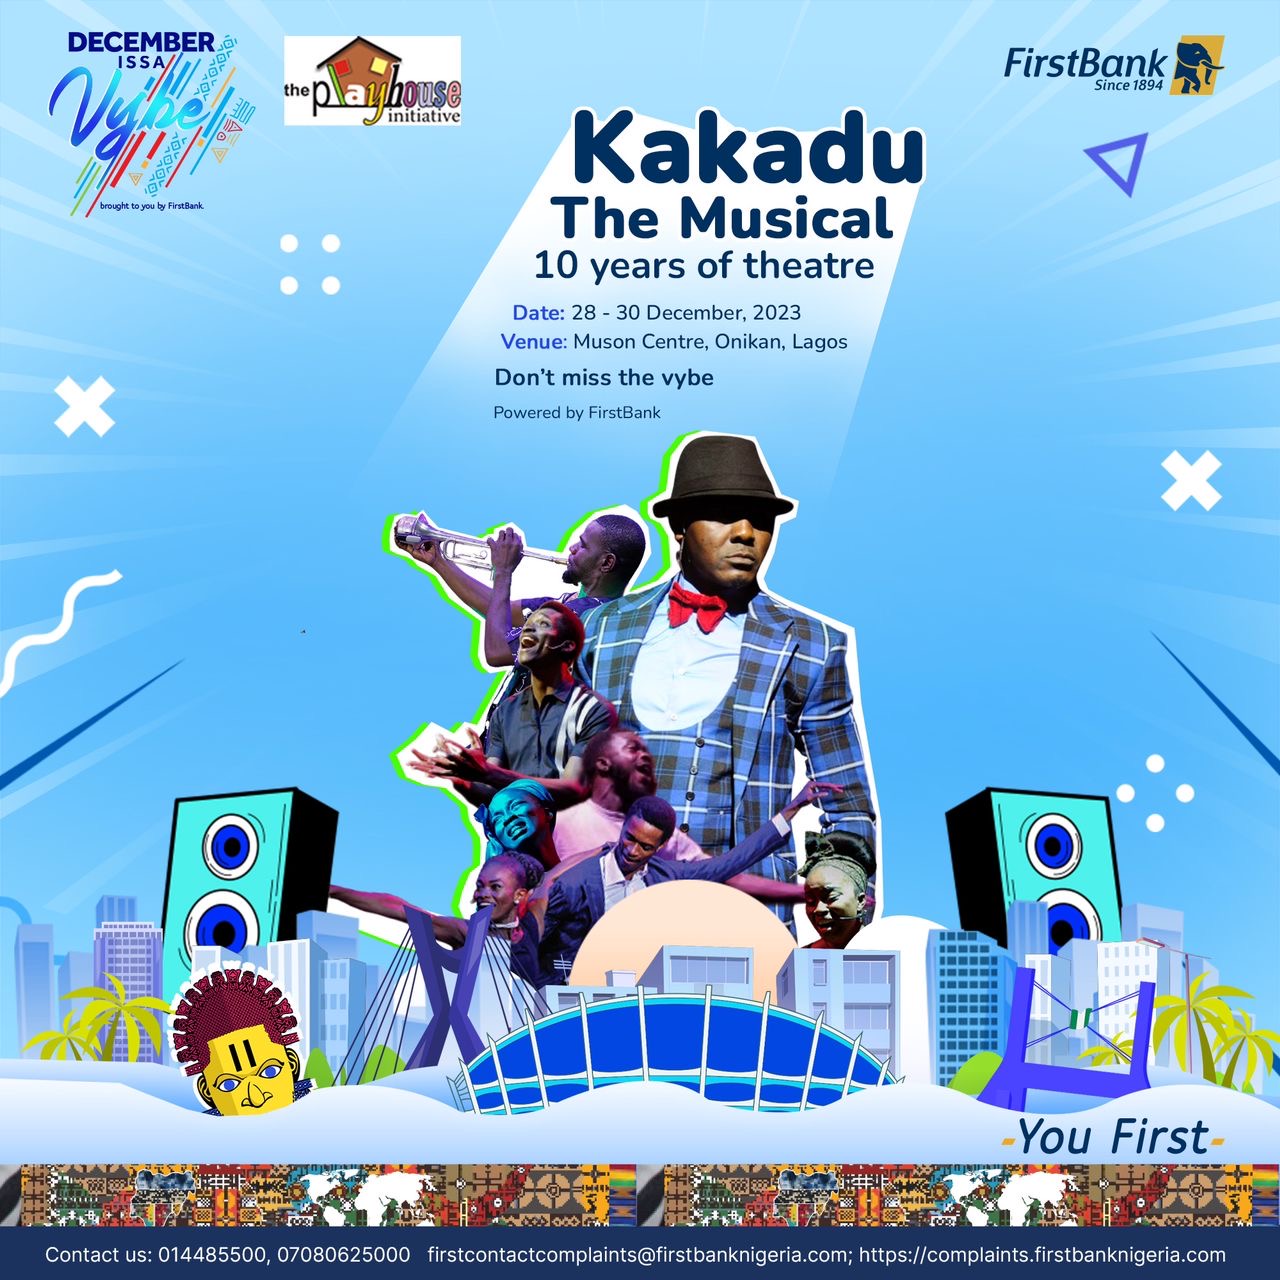 DecemberIssAVybe: FirstBank Sponsors Kakadu the Musical